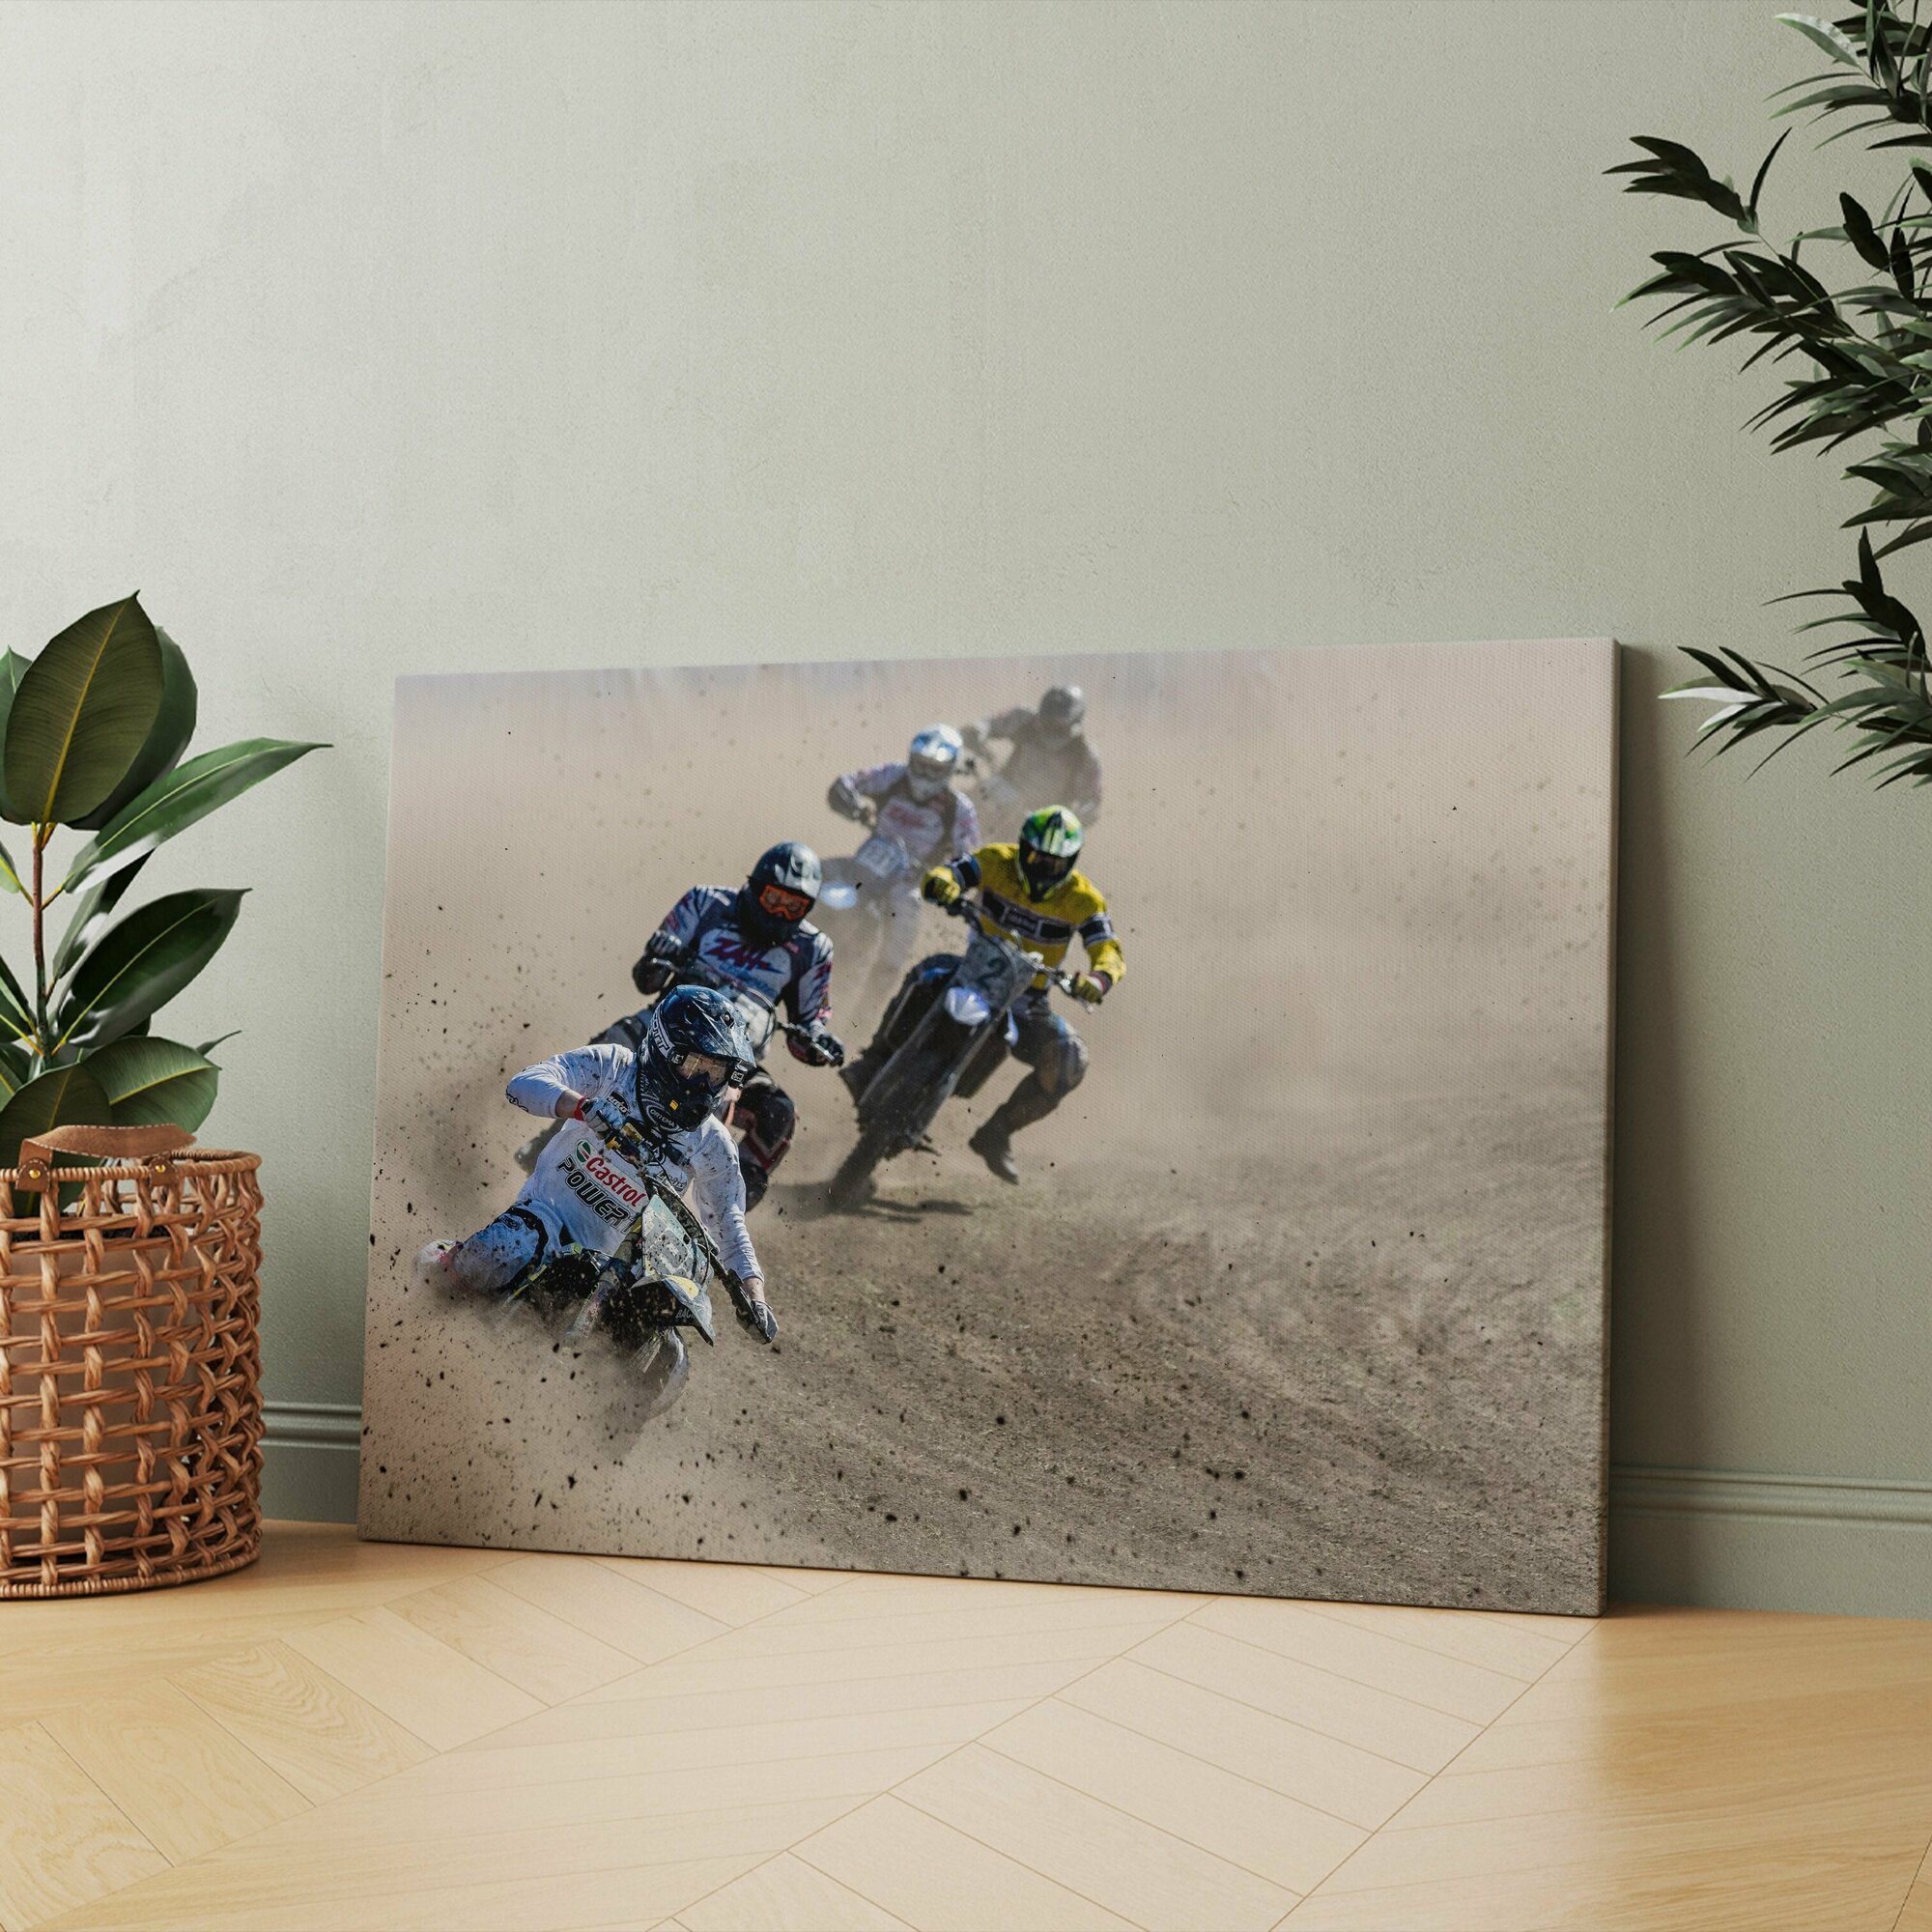 Картина на холсте (мотоцикл гонки на с коляской с боями sony и трасса для обнинск) 50x70 см для интерьера в комнату на стену в подарок